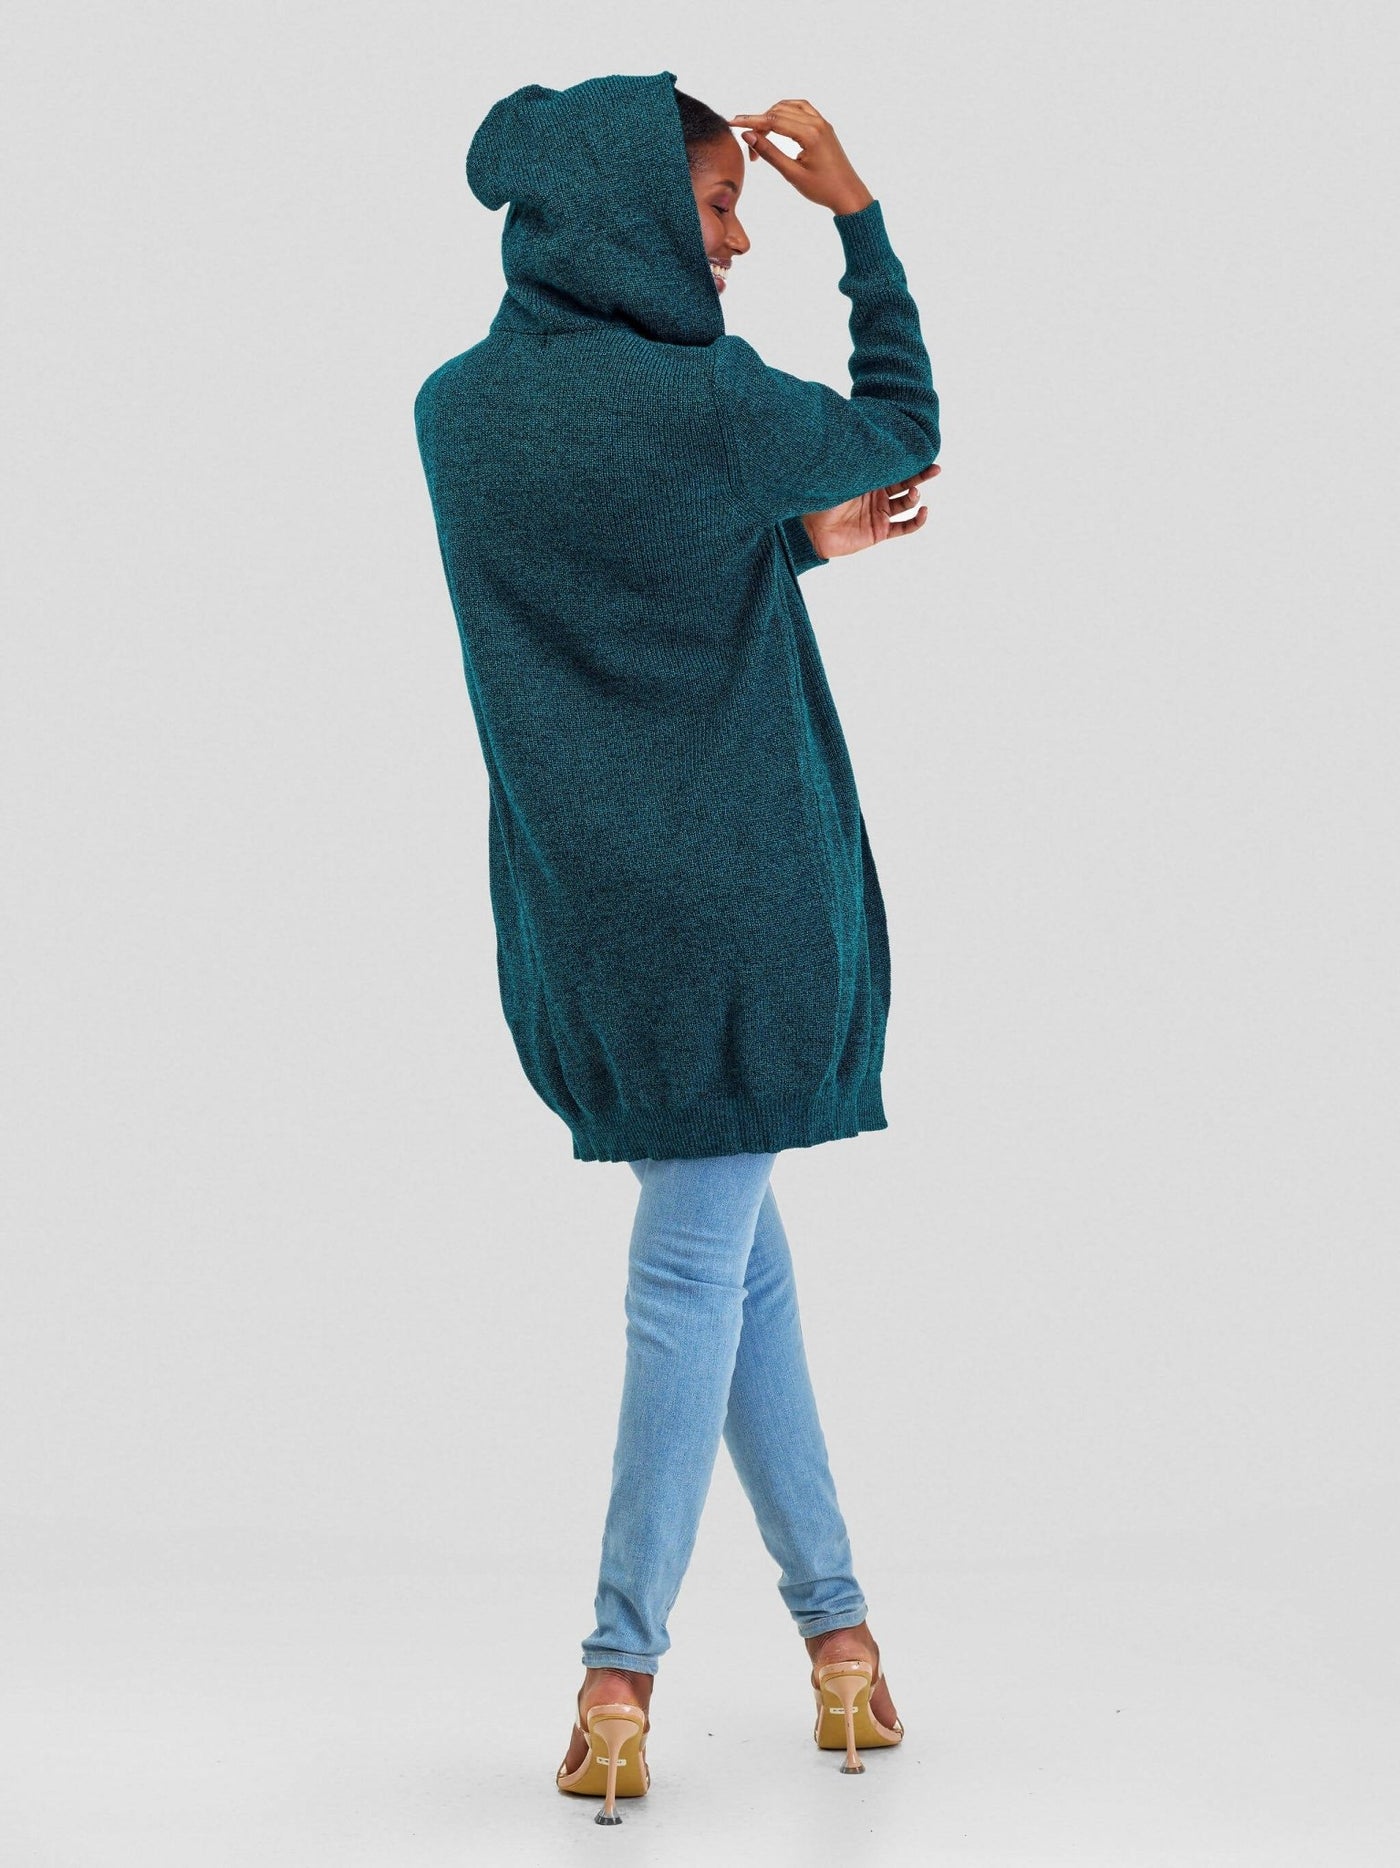 Anel's Knitwear Hooded Sweater - Teal - Shopzetu